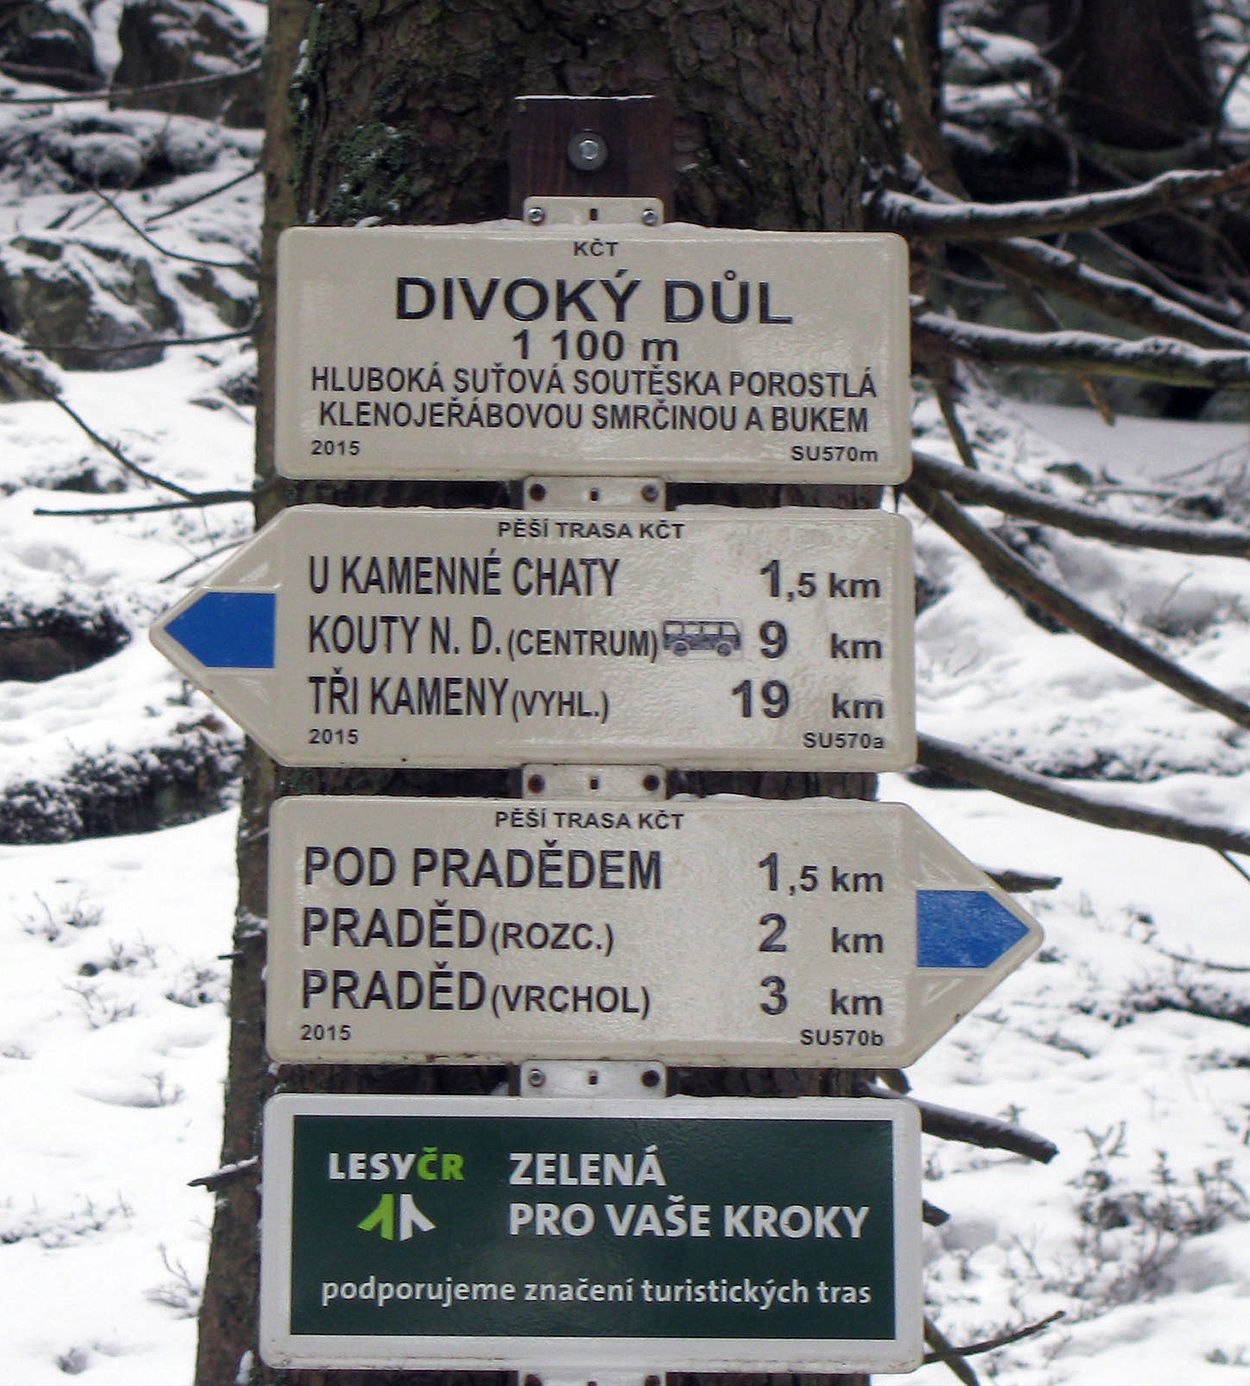 DIVOKY DUL 1100 m